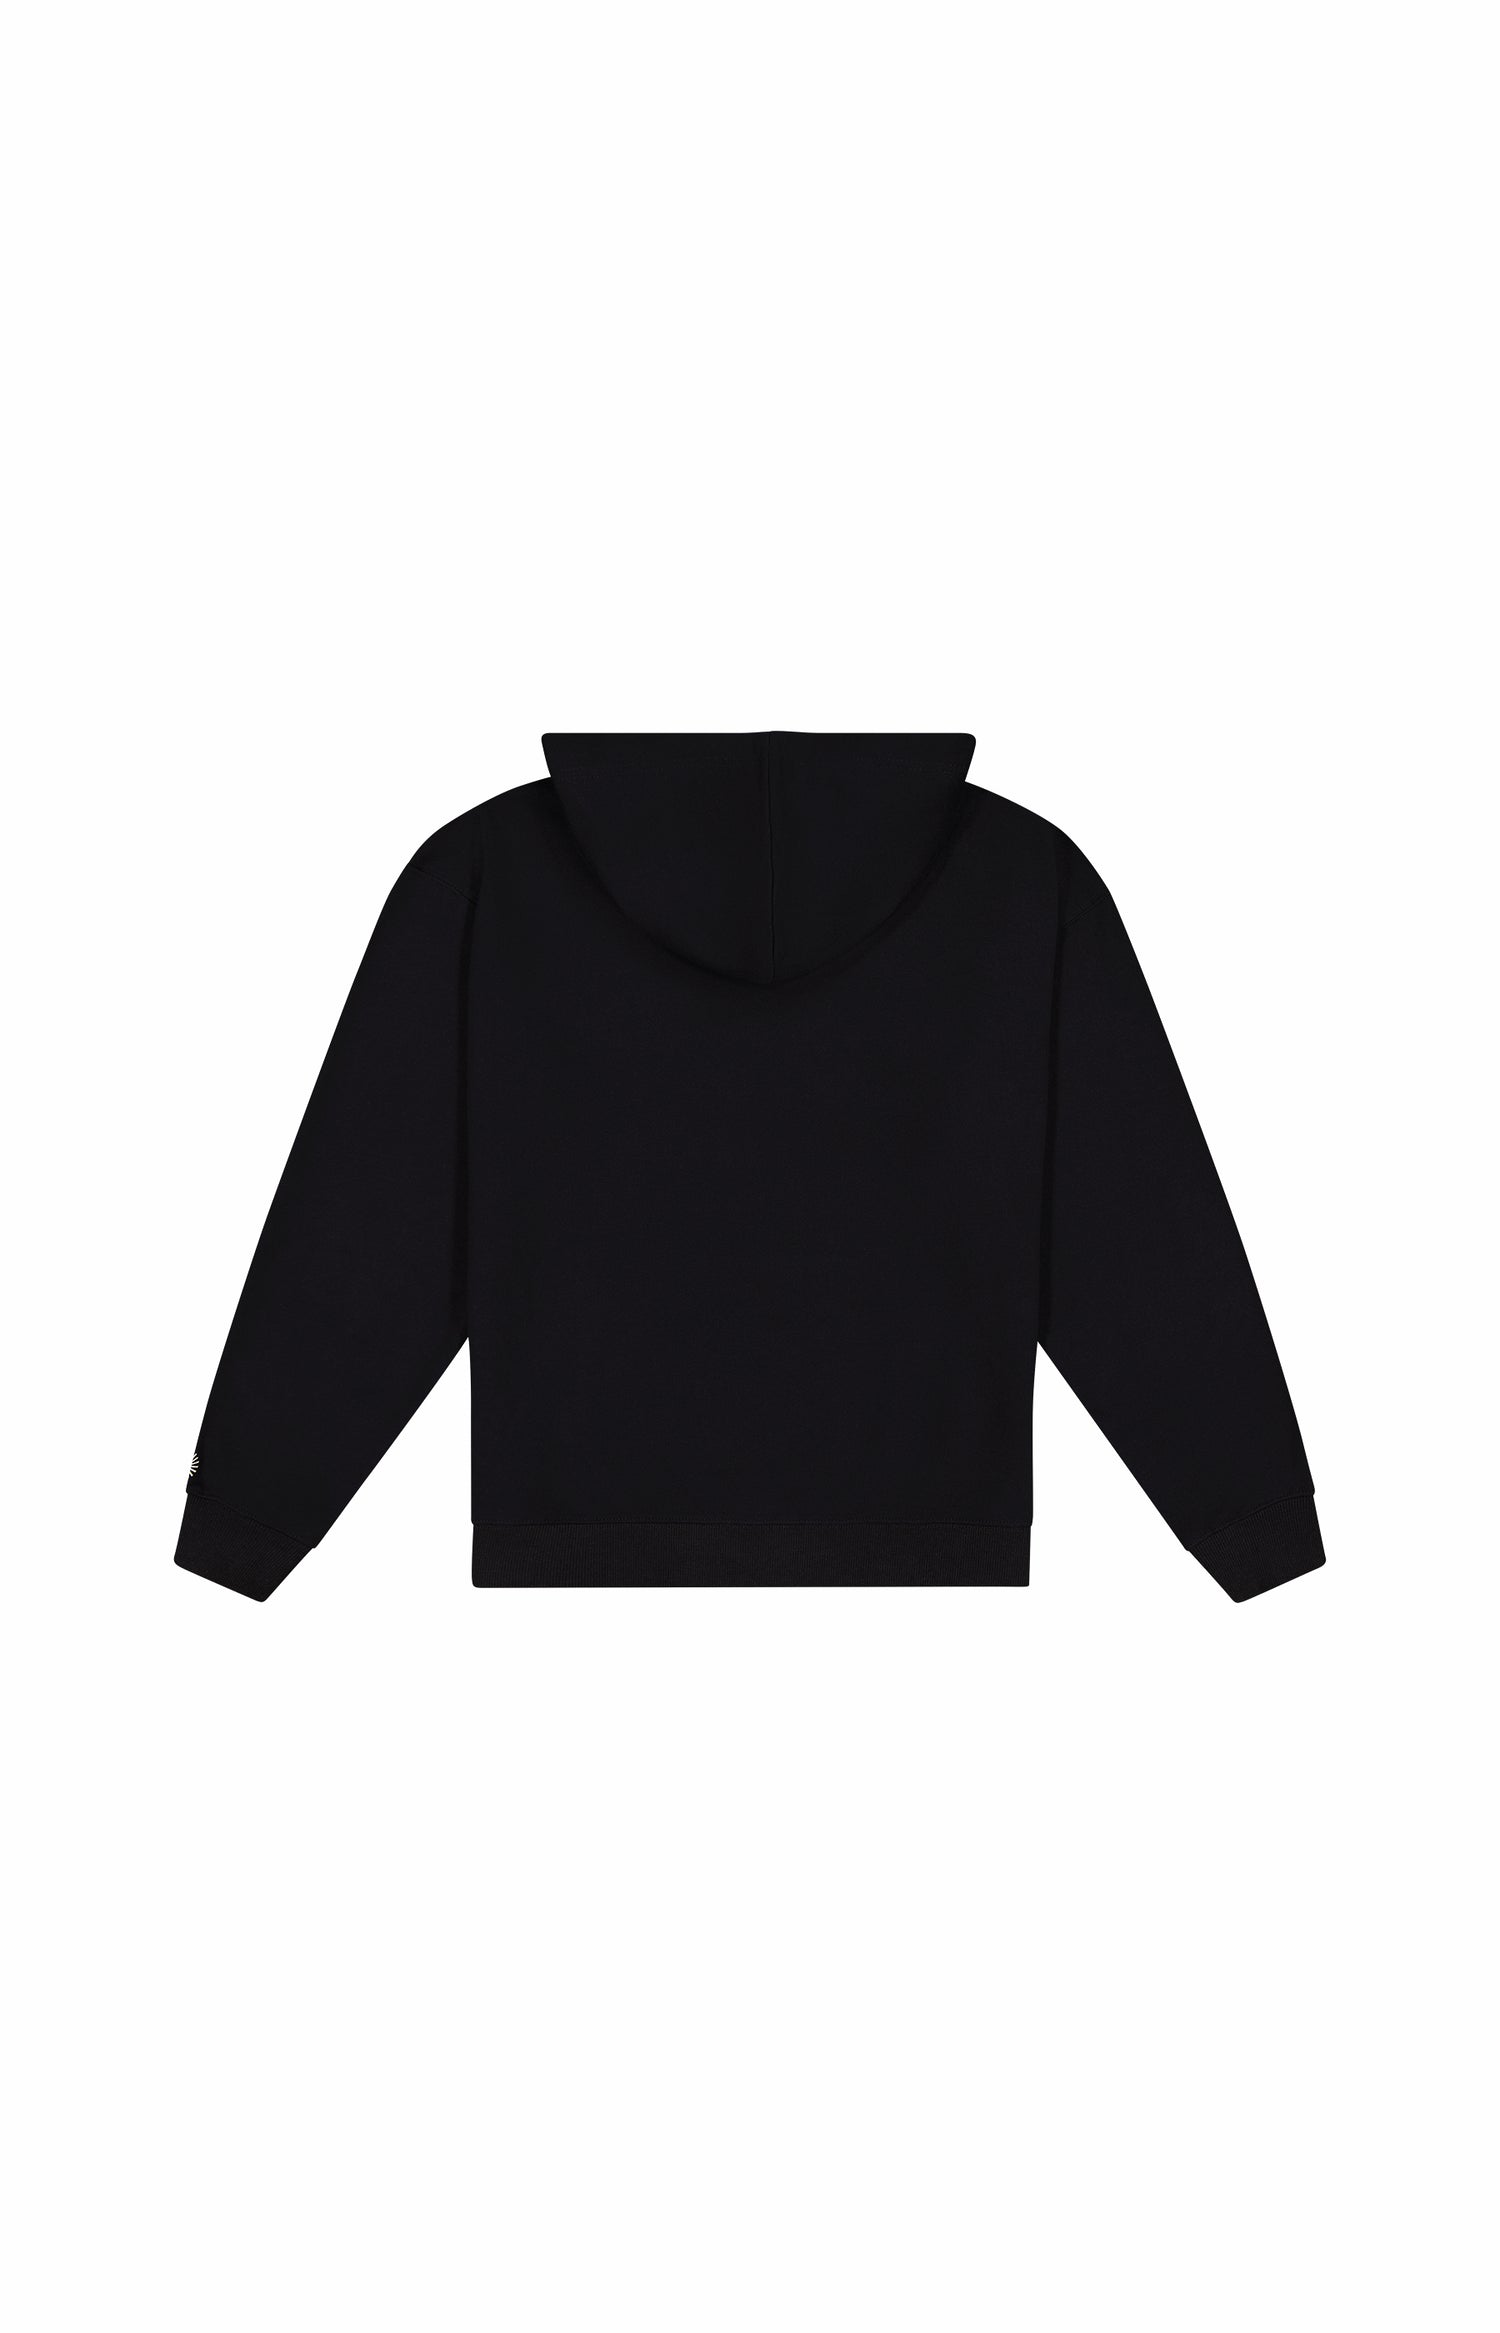 back of plain black hoodie